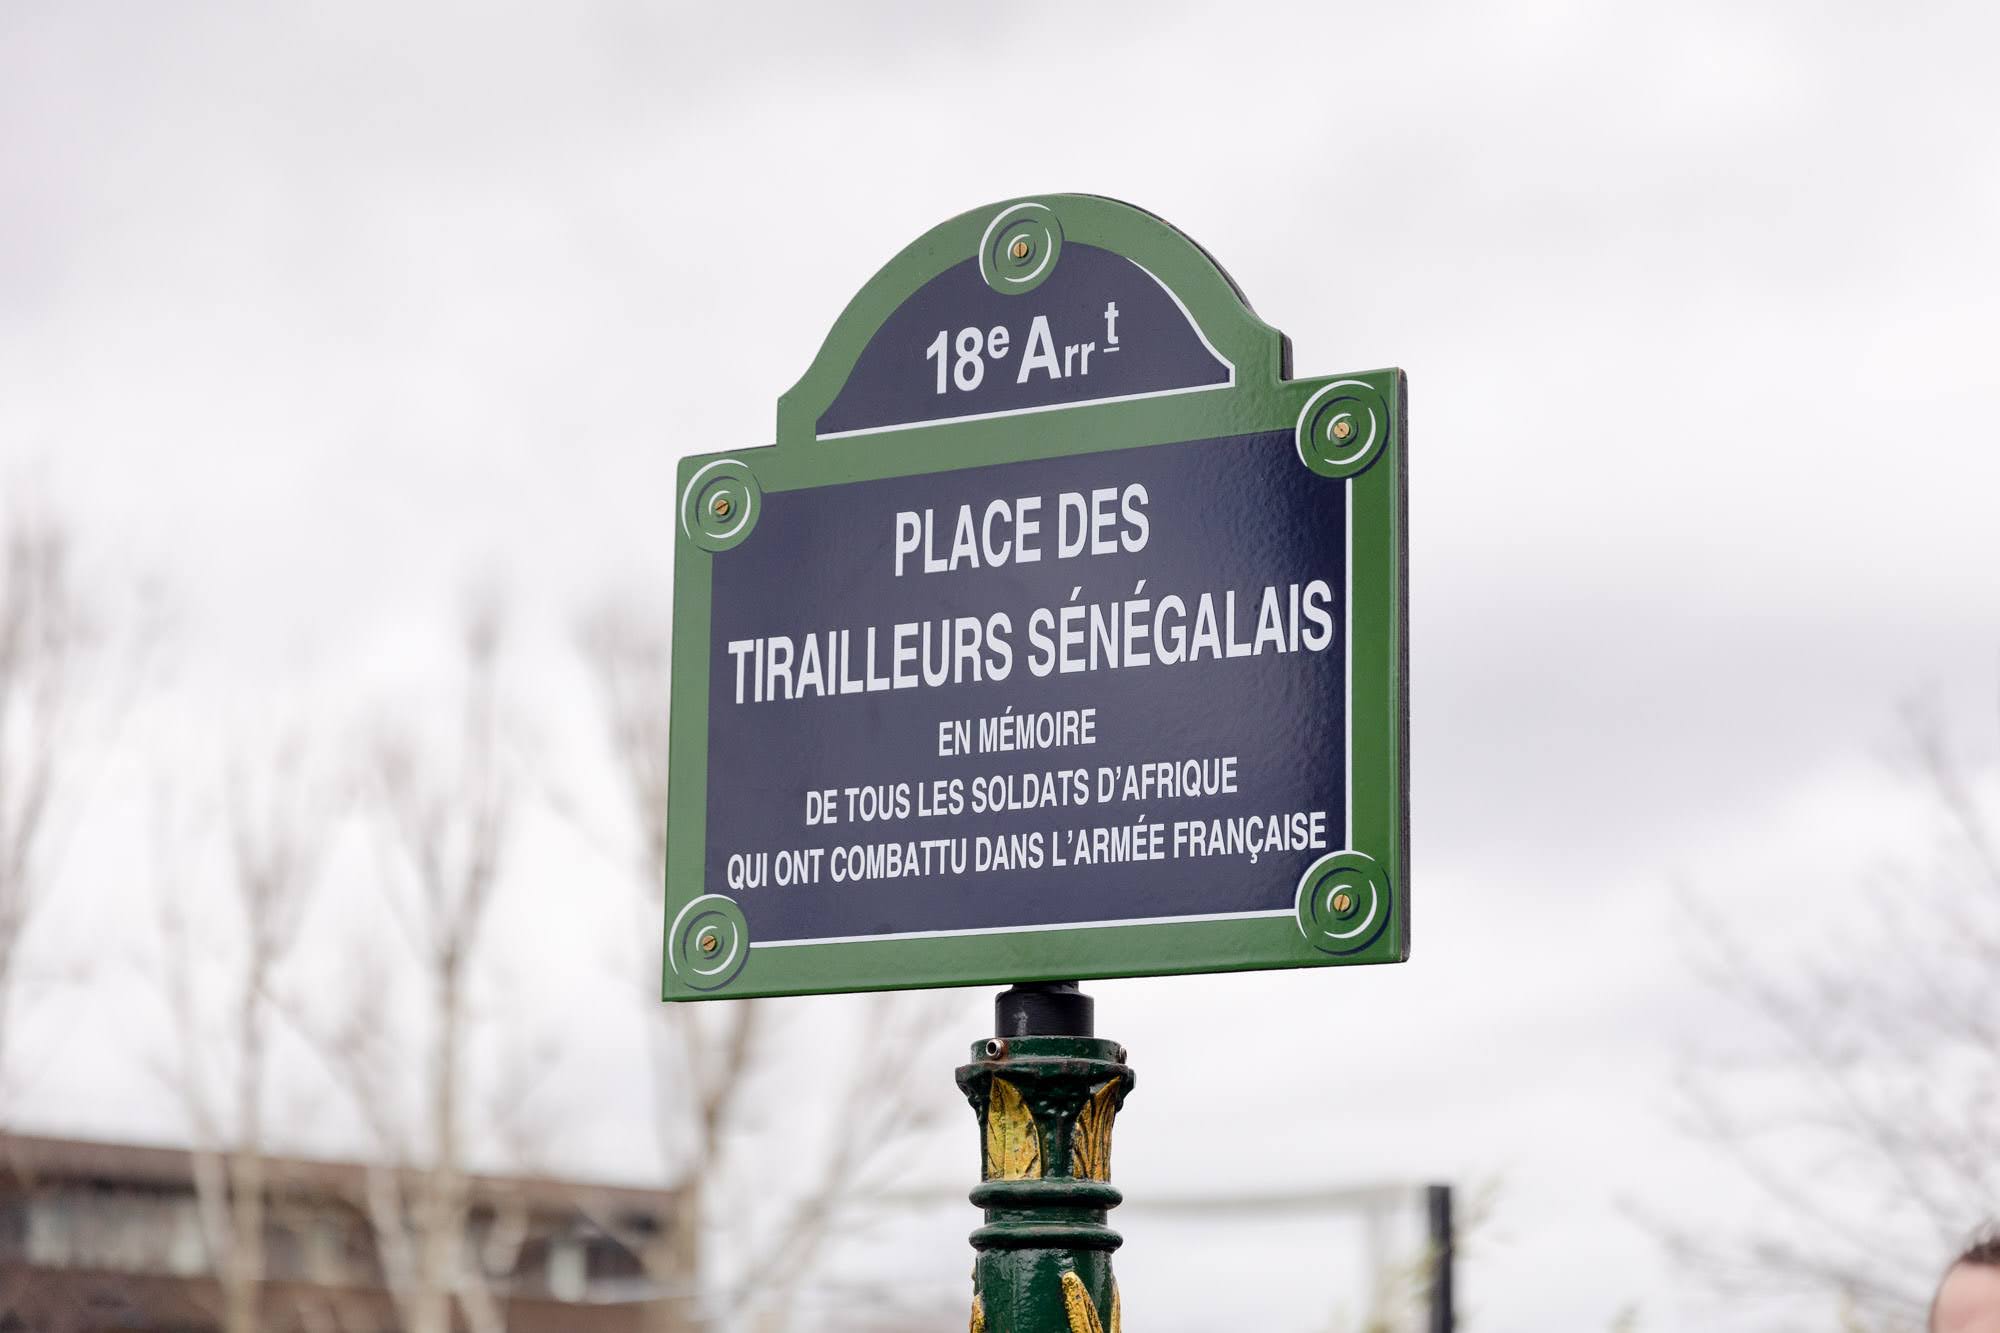 La place des Tirailleurs sénégalais a été inaugurée le 10 mars 2023. Elle rend hommage à tous les soldats africains ayant combattu sous le drapeau français.